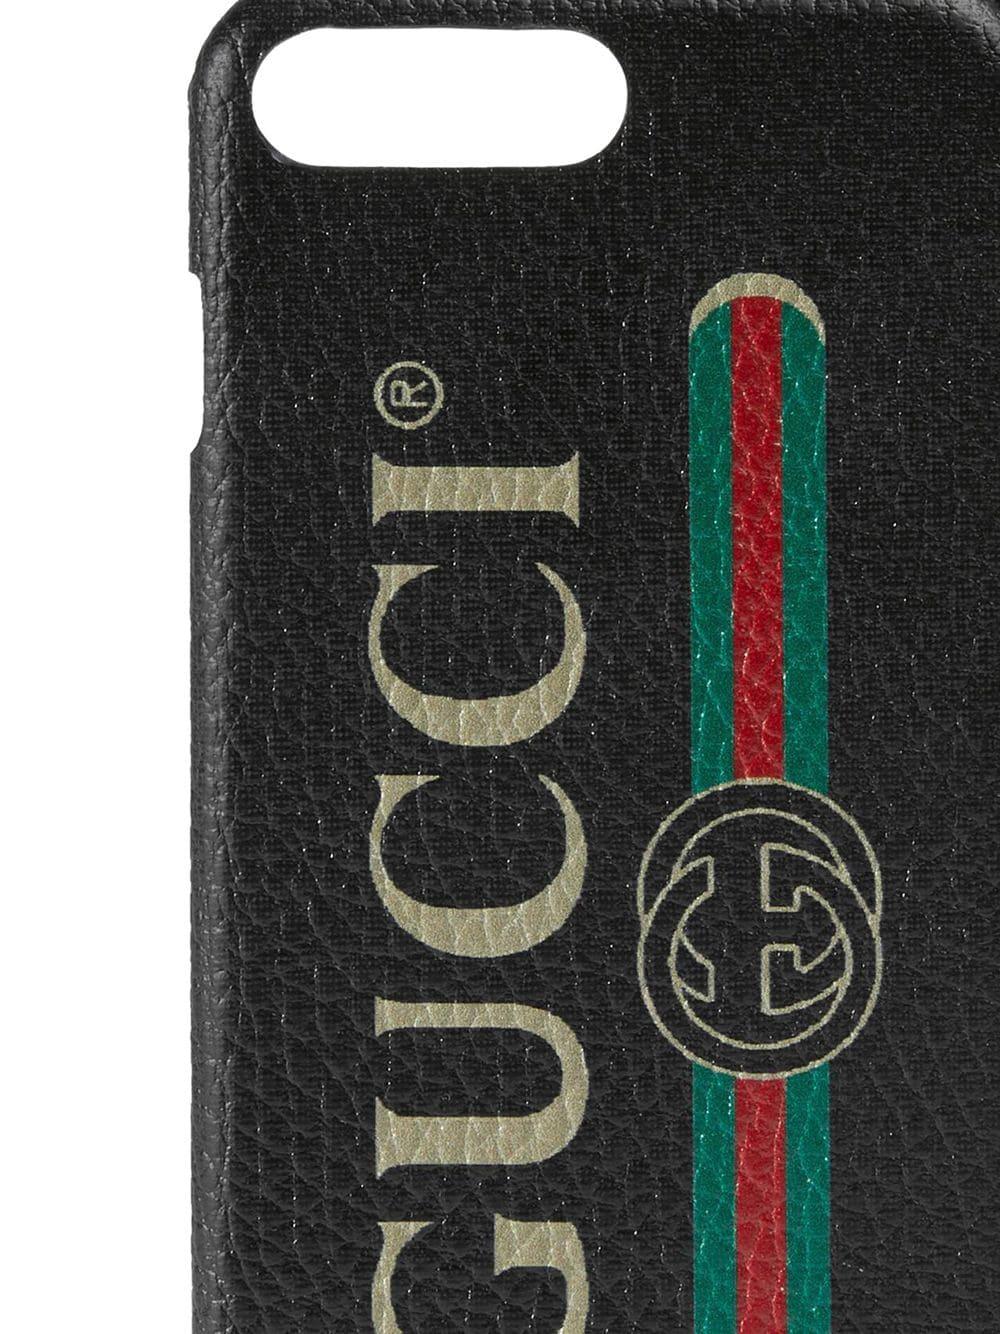 Gucci Print Iphone 8 Plus Case in Black - Lyst